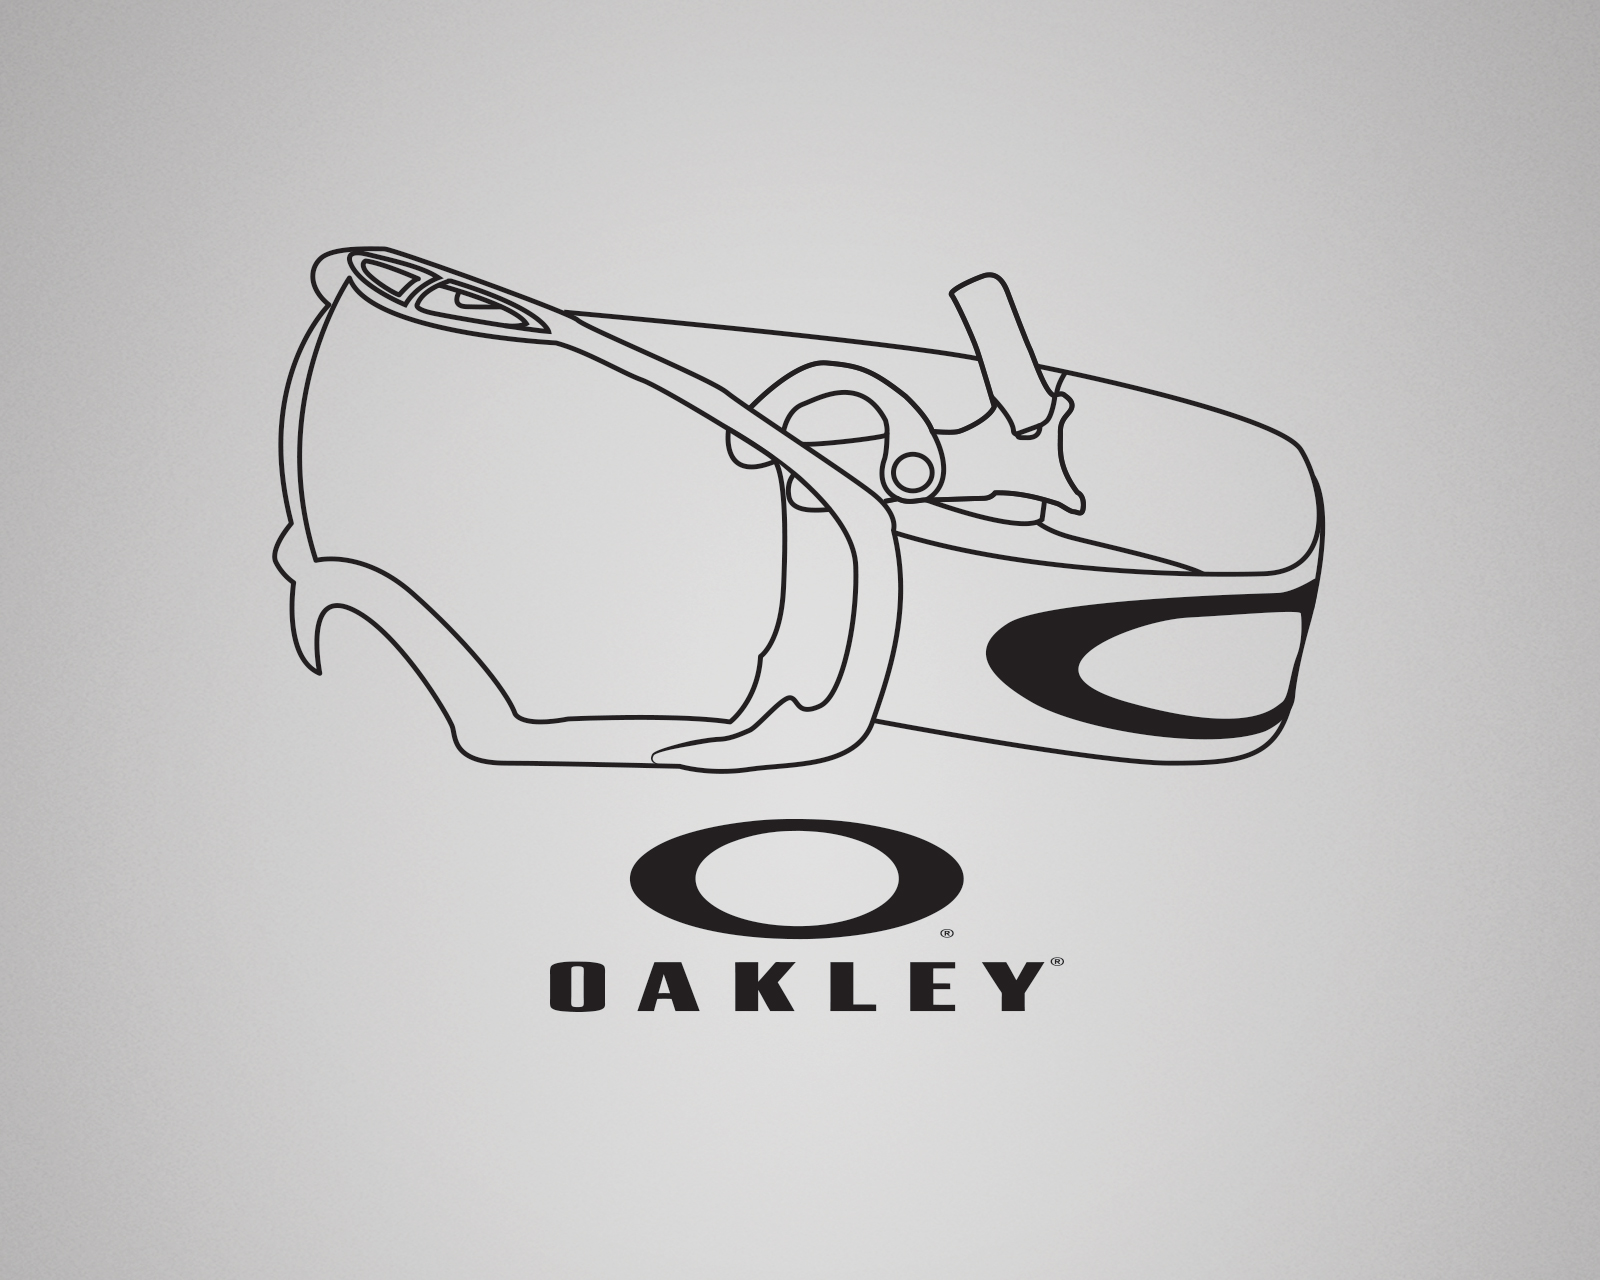 Oakley. ColorfulStudio.com